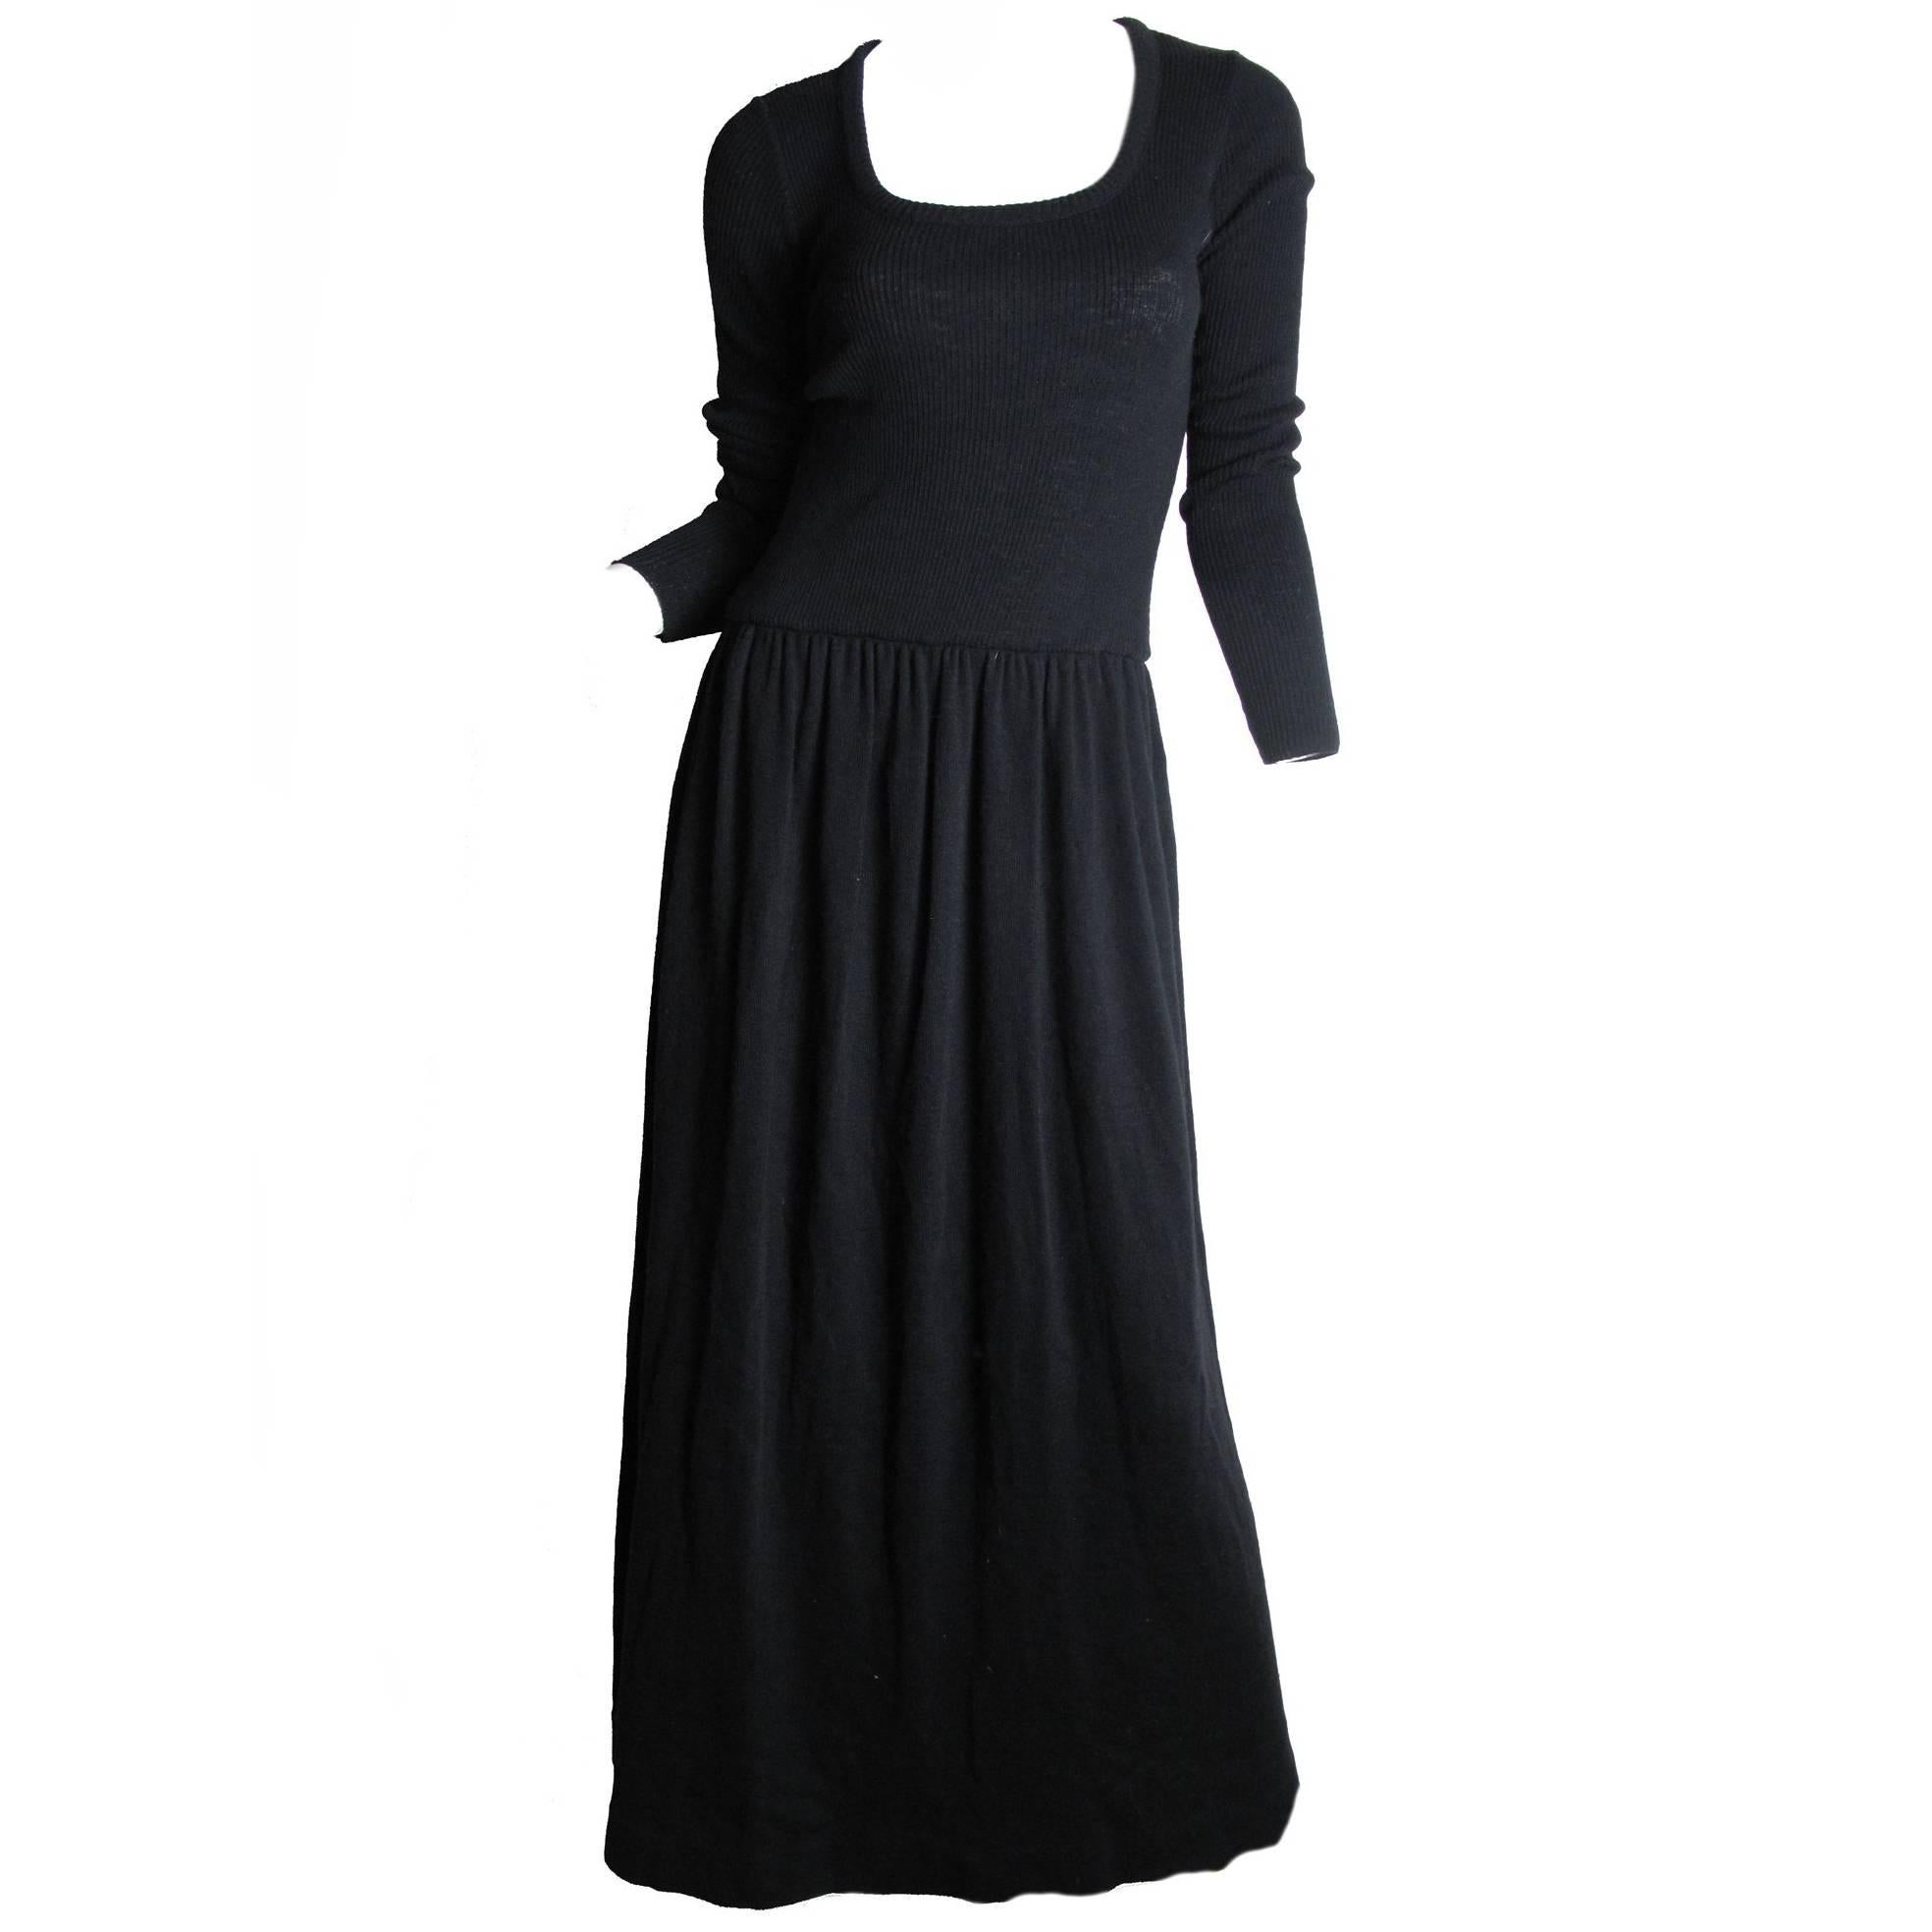 Mollie Parnis Long Black Knit Dress, 1970s